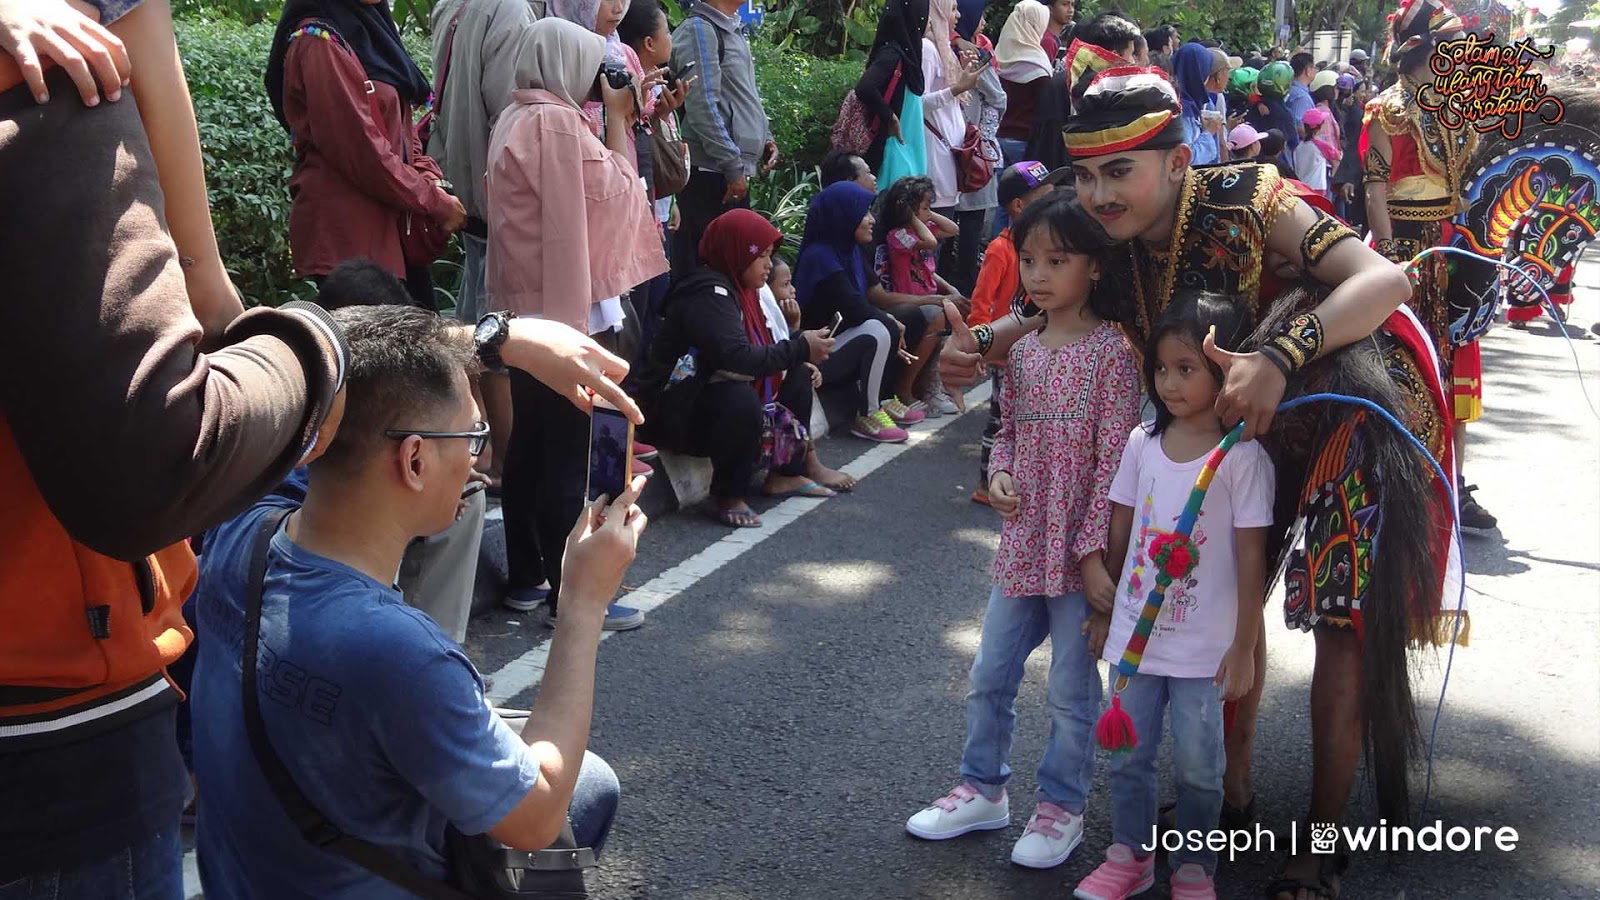 Meriahnya Surabaya Vaganza Menjadi Magnet Bagi Wisatawan